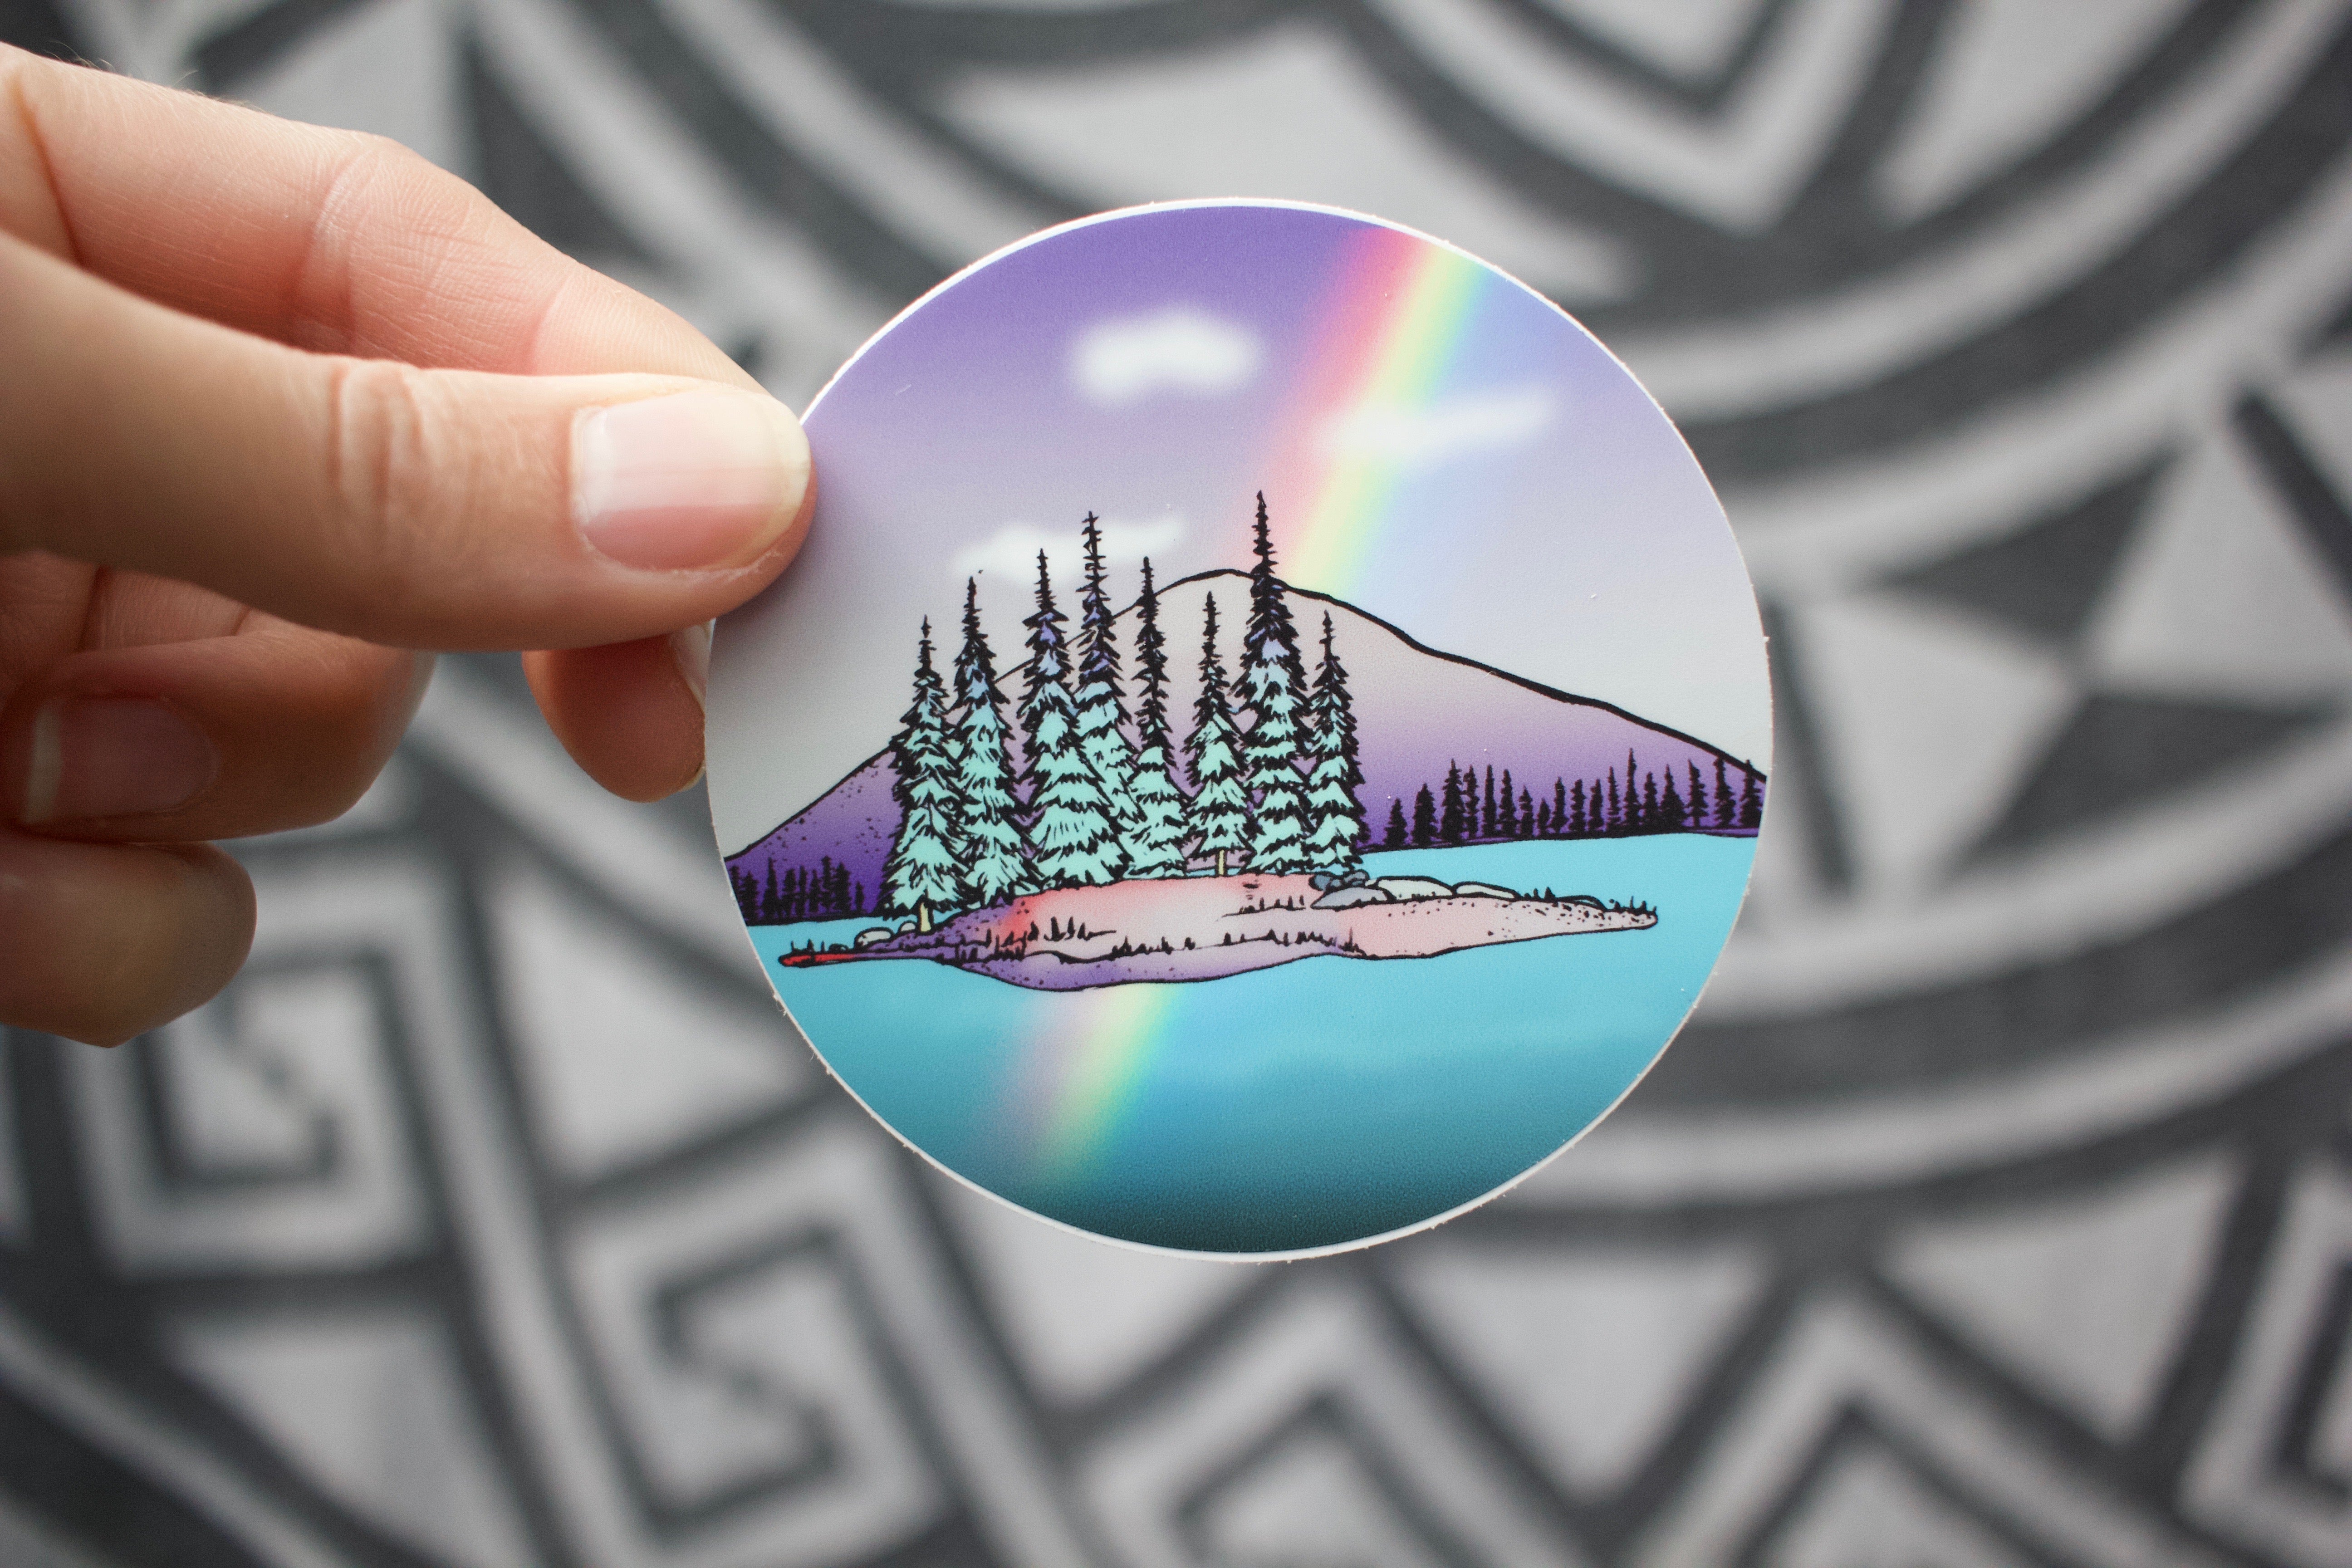 Pines and Rainbow Sticker-Vinyl Sticker-Roam Wild Designs